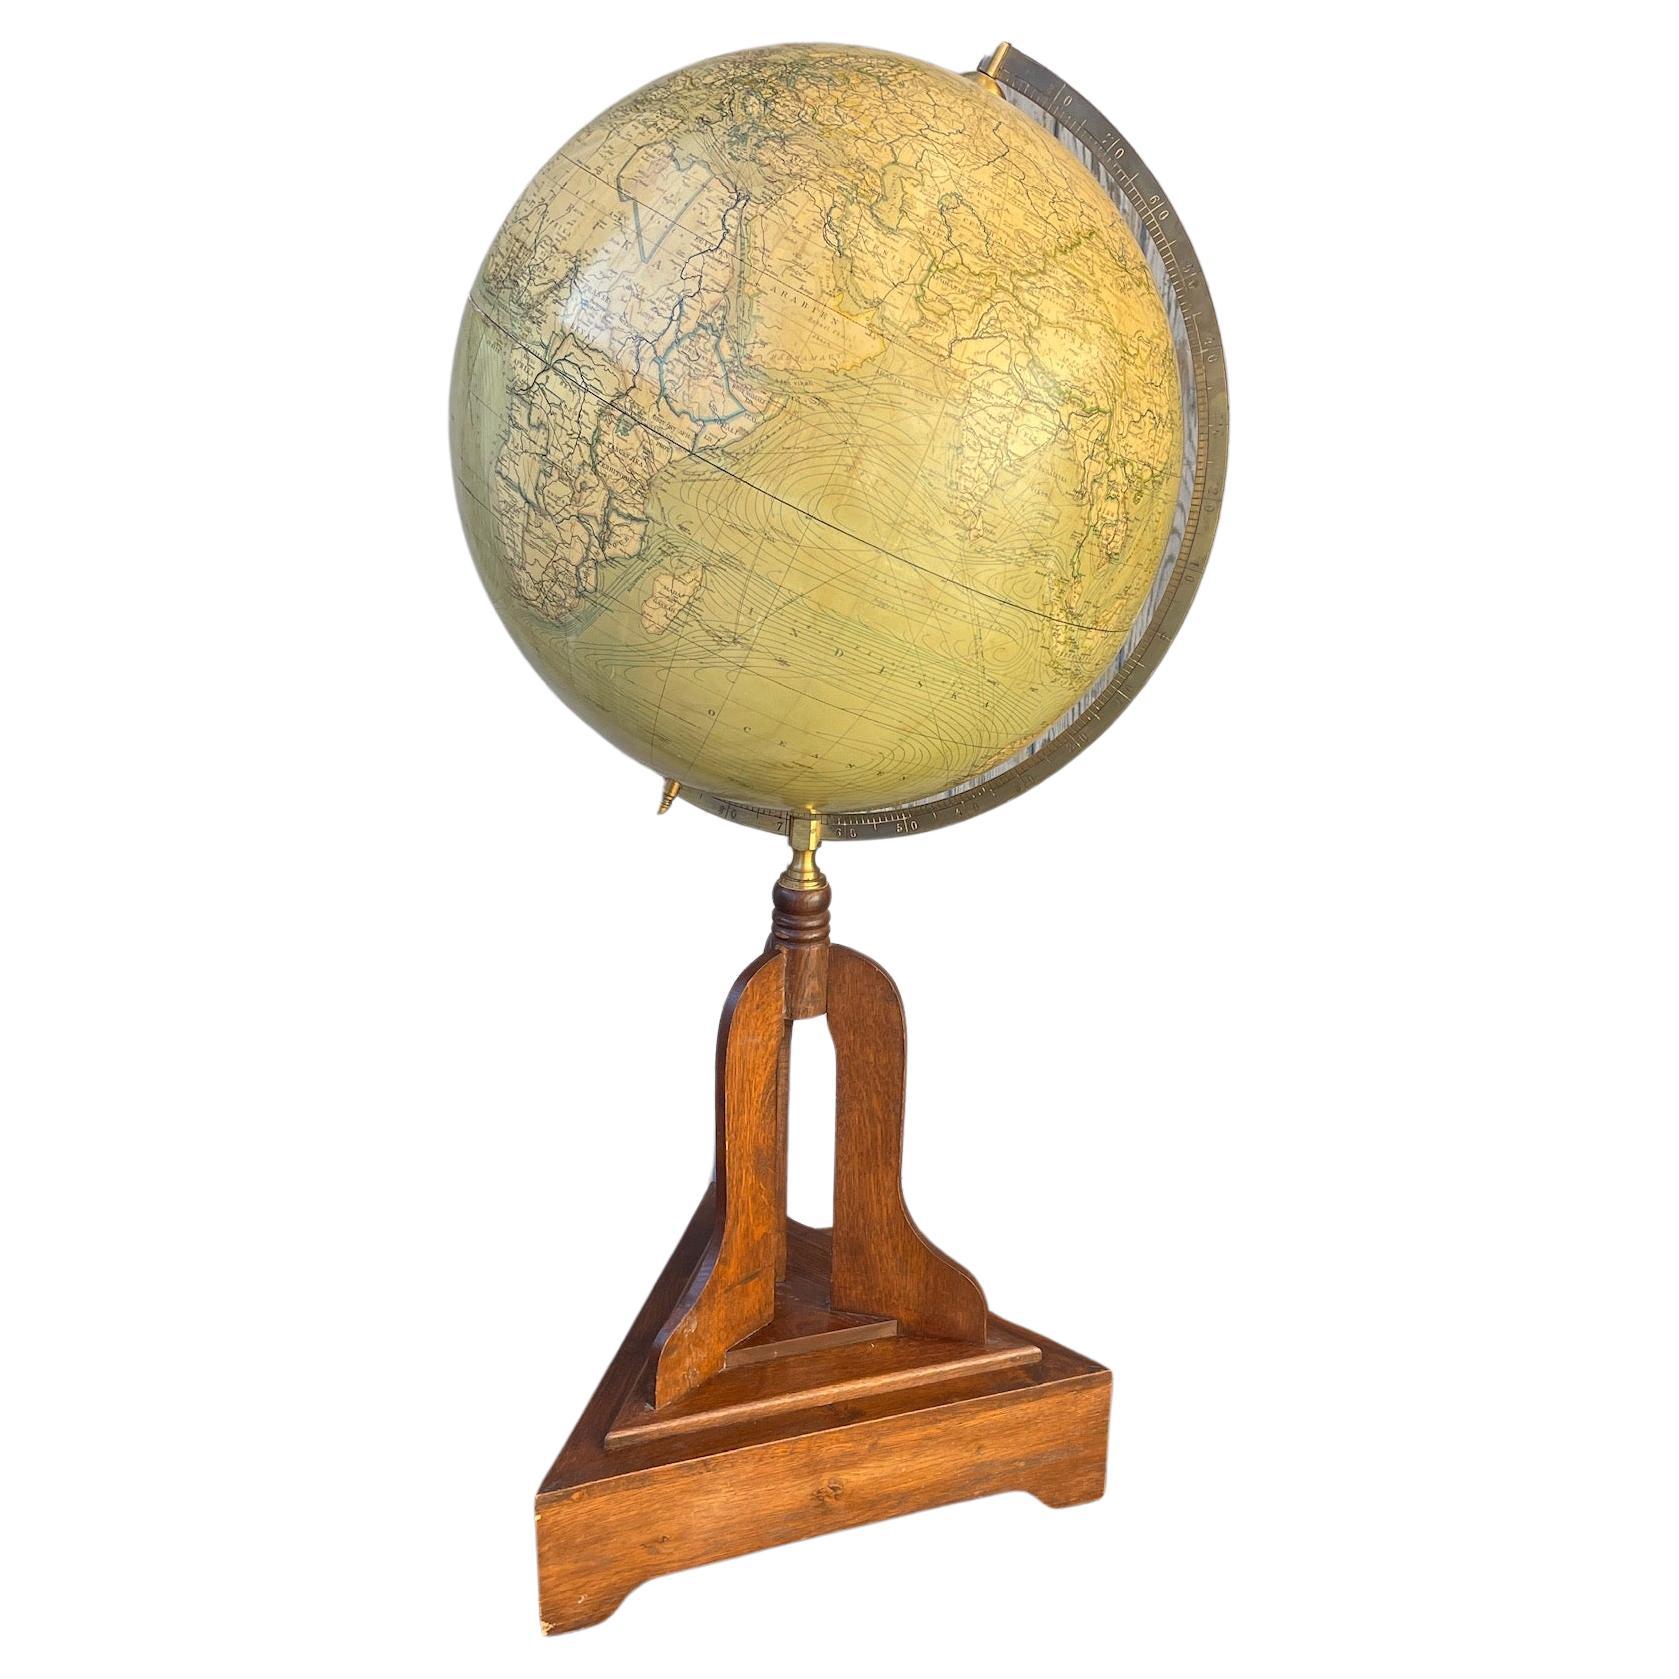 Großer Vintage-Globus auf Holzsockel, ca. 1920er Jahre

Dekorieren Sie ein Büro oder einen Schreibtisch mit diesem schön erhaltenen antiken Globus. Dieses in Europa um 1920 gefertigte Stück steht auf einem einfachen Holzsockel.  